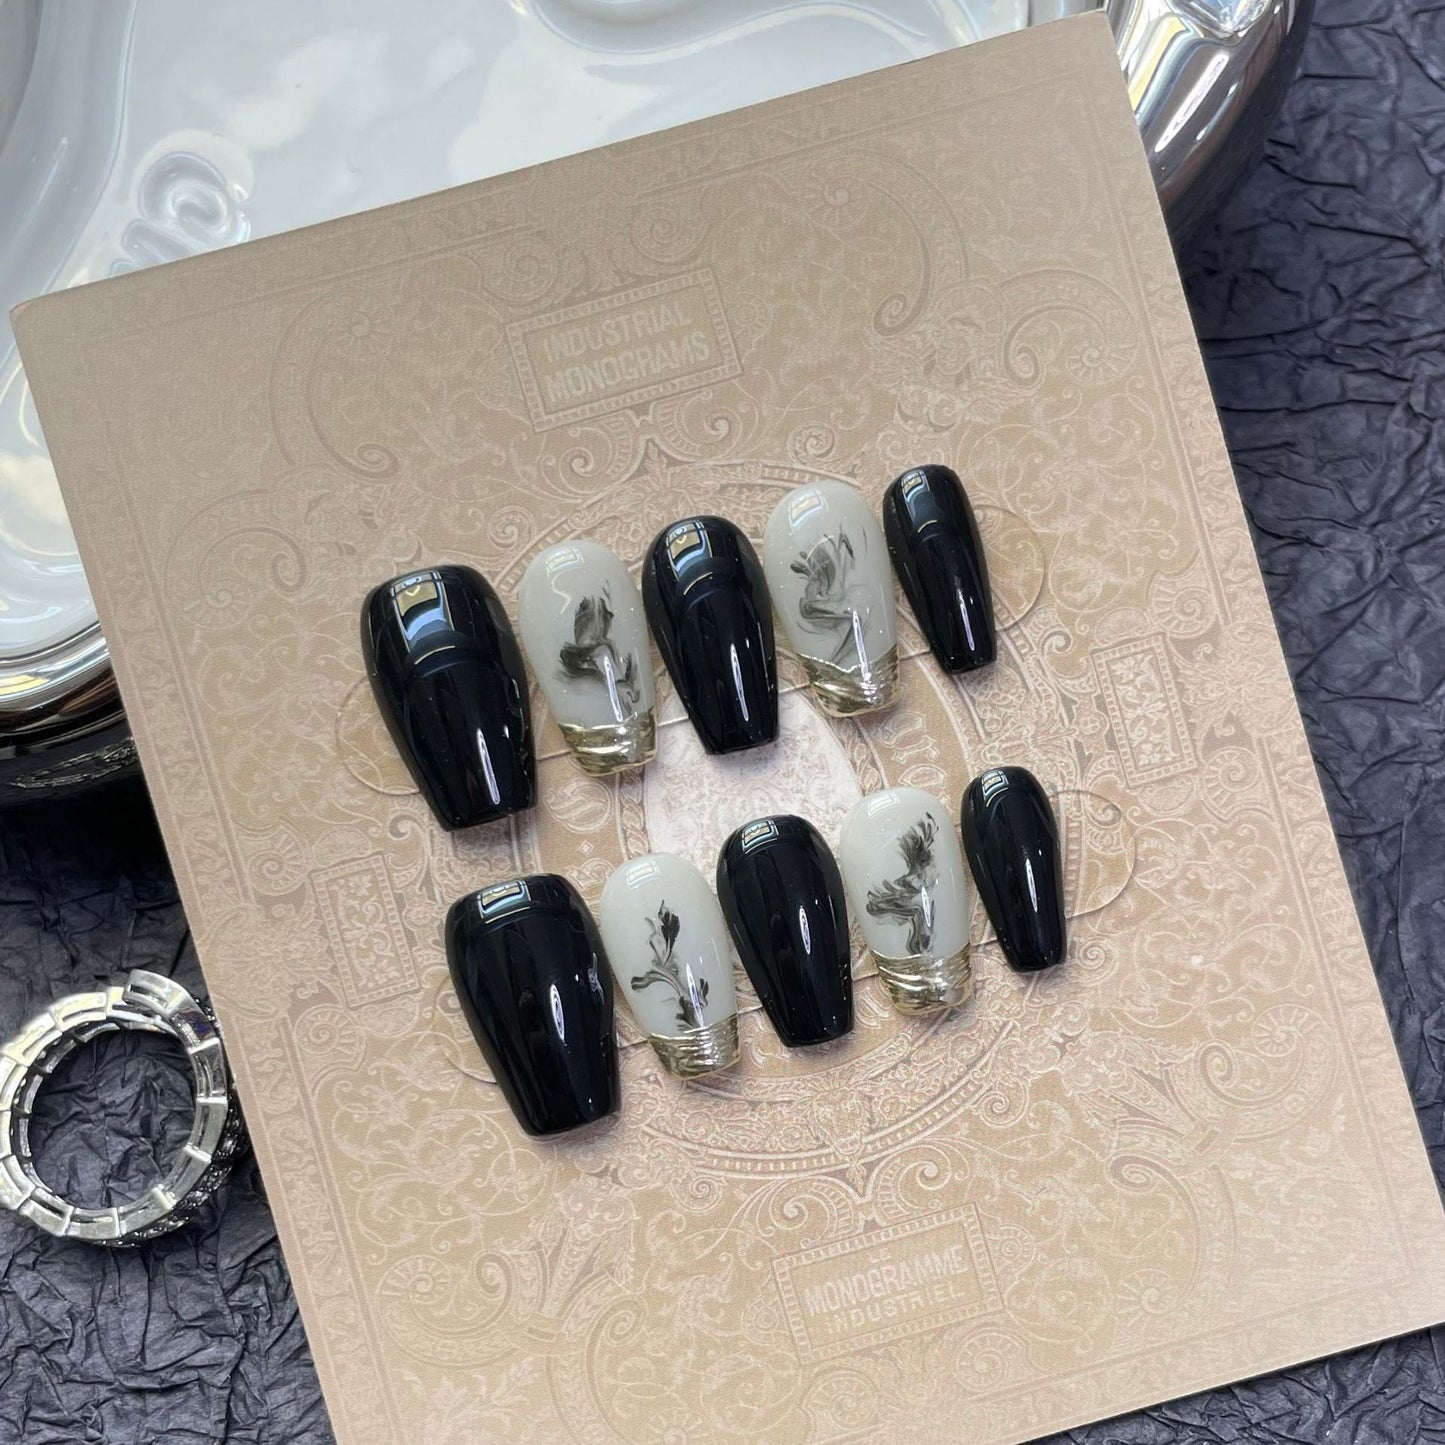 1243 Dark Night Stain stijl press-on nagels 100% handgemaakte kunstnagels zwart wit